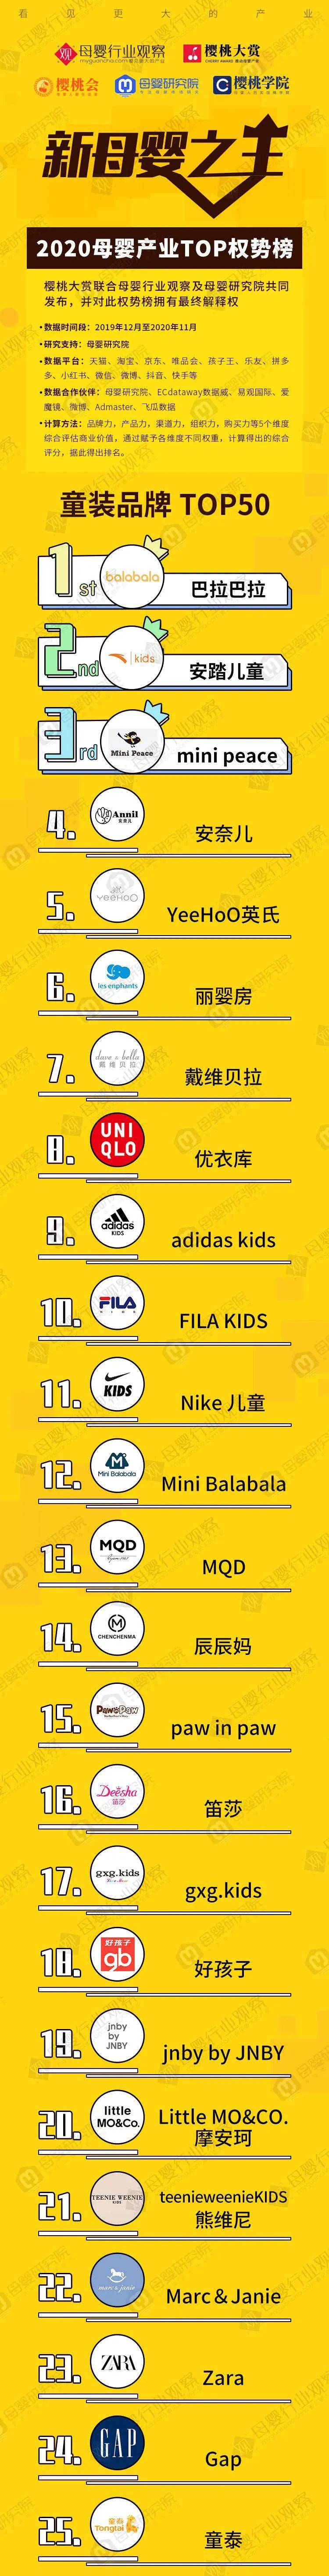 童装品牌TOP50权半岛体育势榜发布直击2021消费新风向(图1)